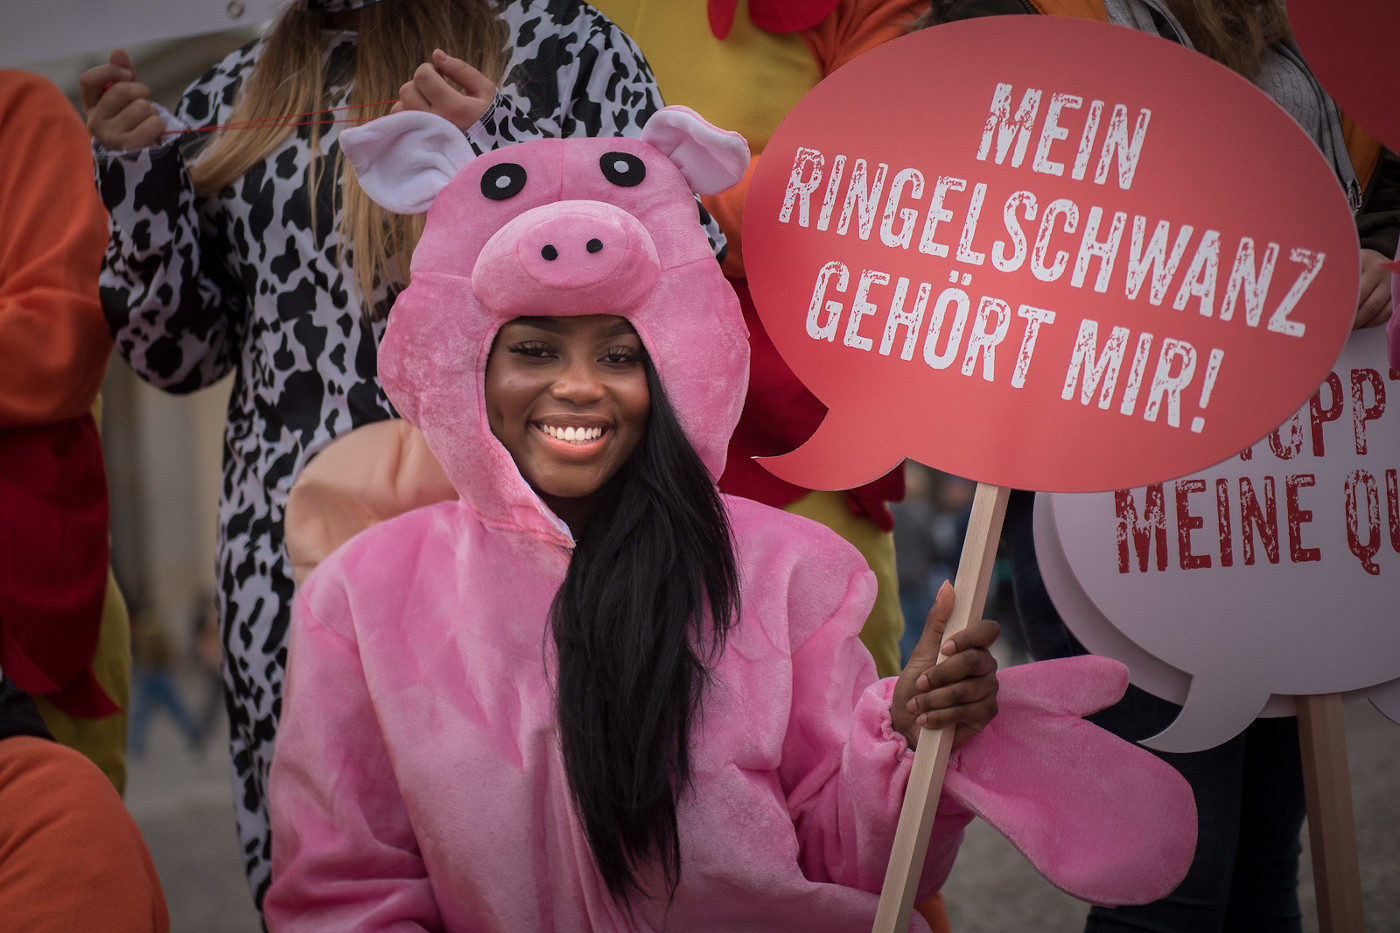 Eine Person protestiert im pinken Schweinskostüm gegen das Tierwohllabel. Sie hält ein rotes Schild mit der Aufschrift "Mein Ringelschwanz gehört mir".